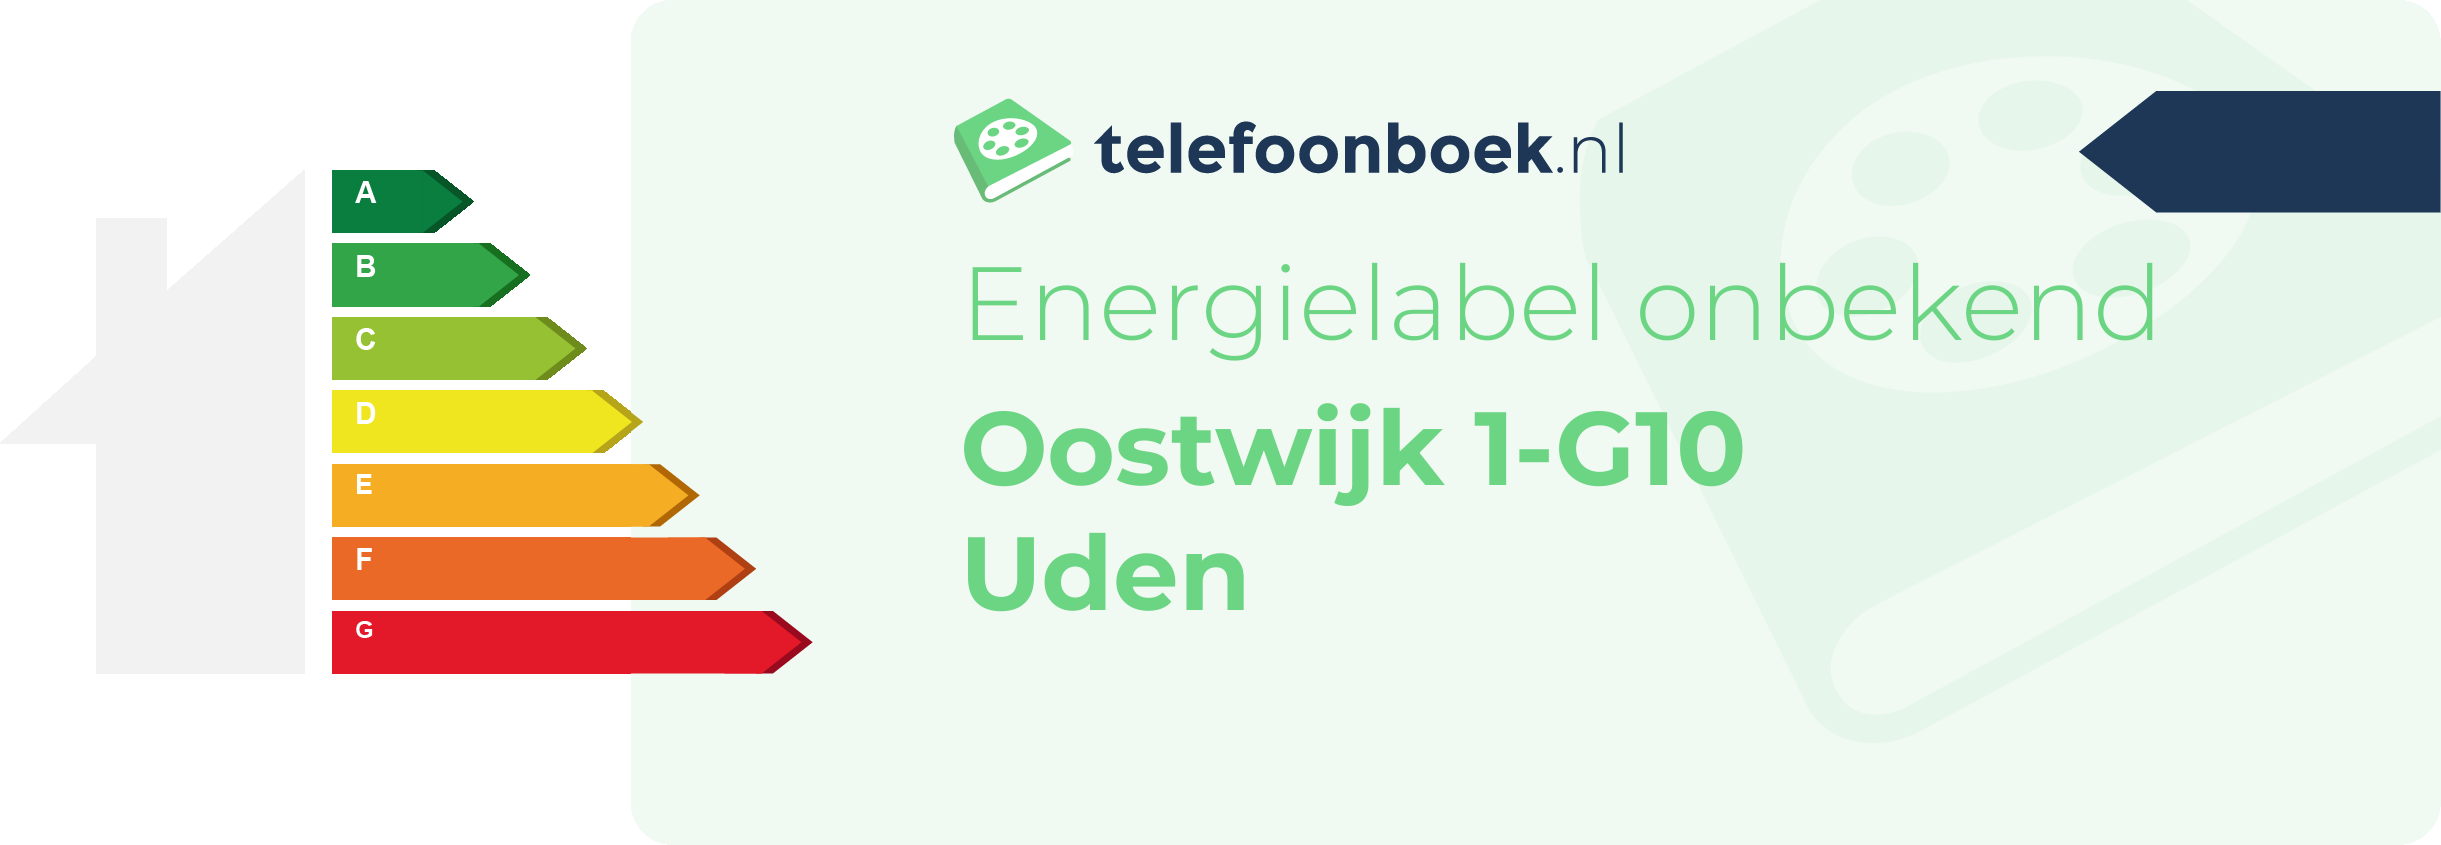 Energielabel Oostwijk 1-G10 Uden